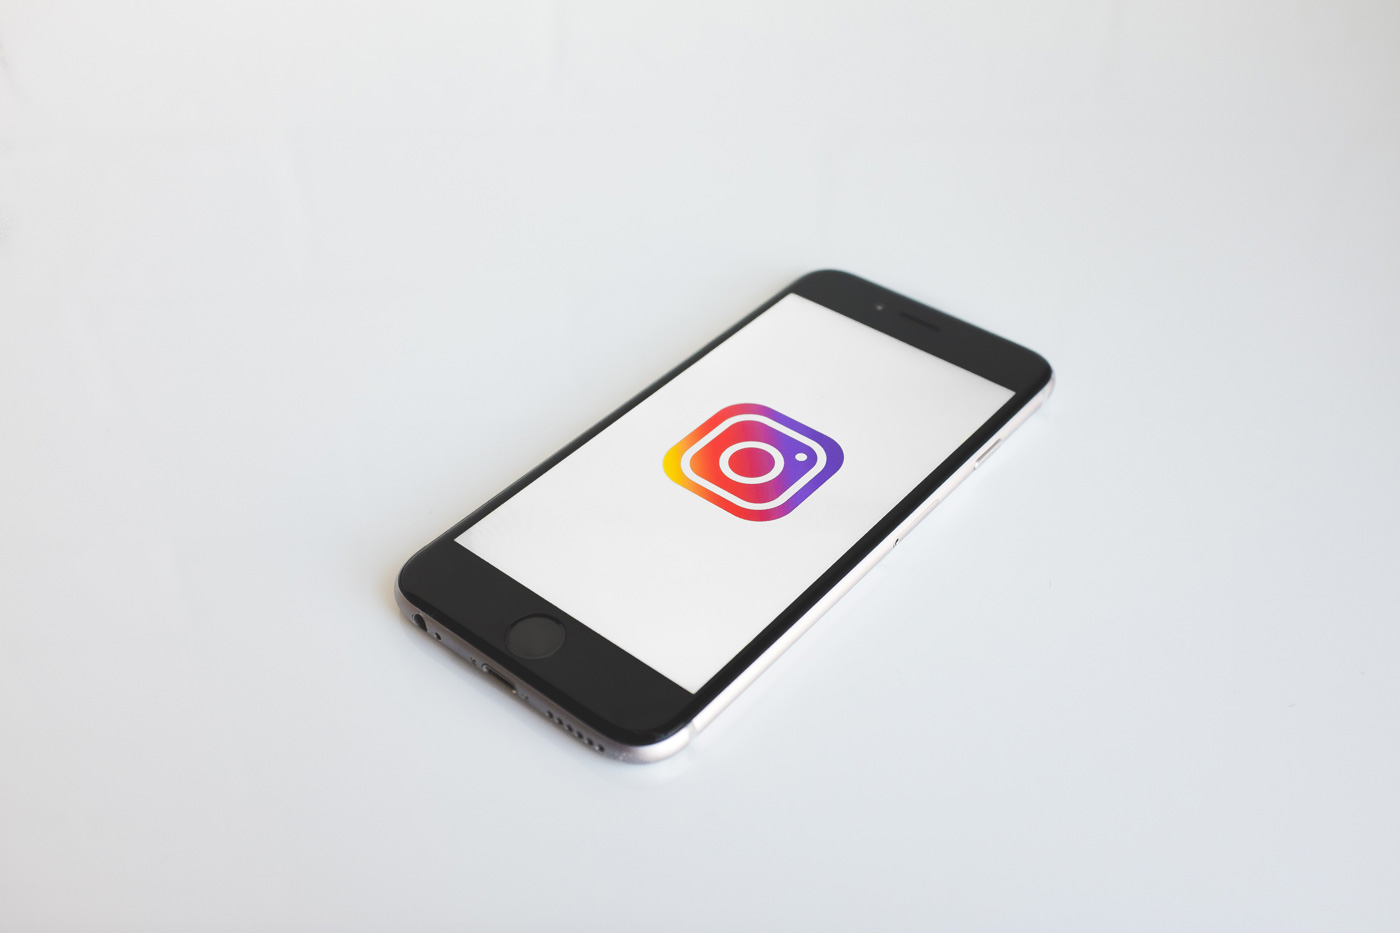 📱 U Instagram dodaly kanaly jak v Telegram